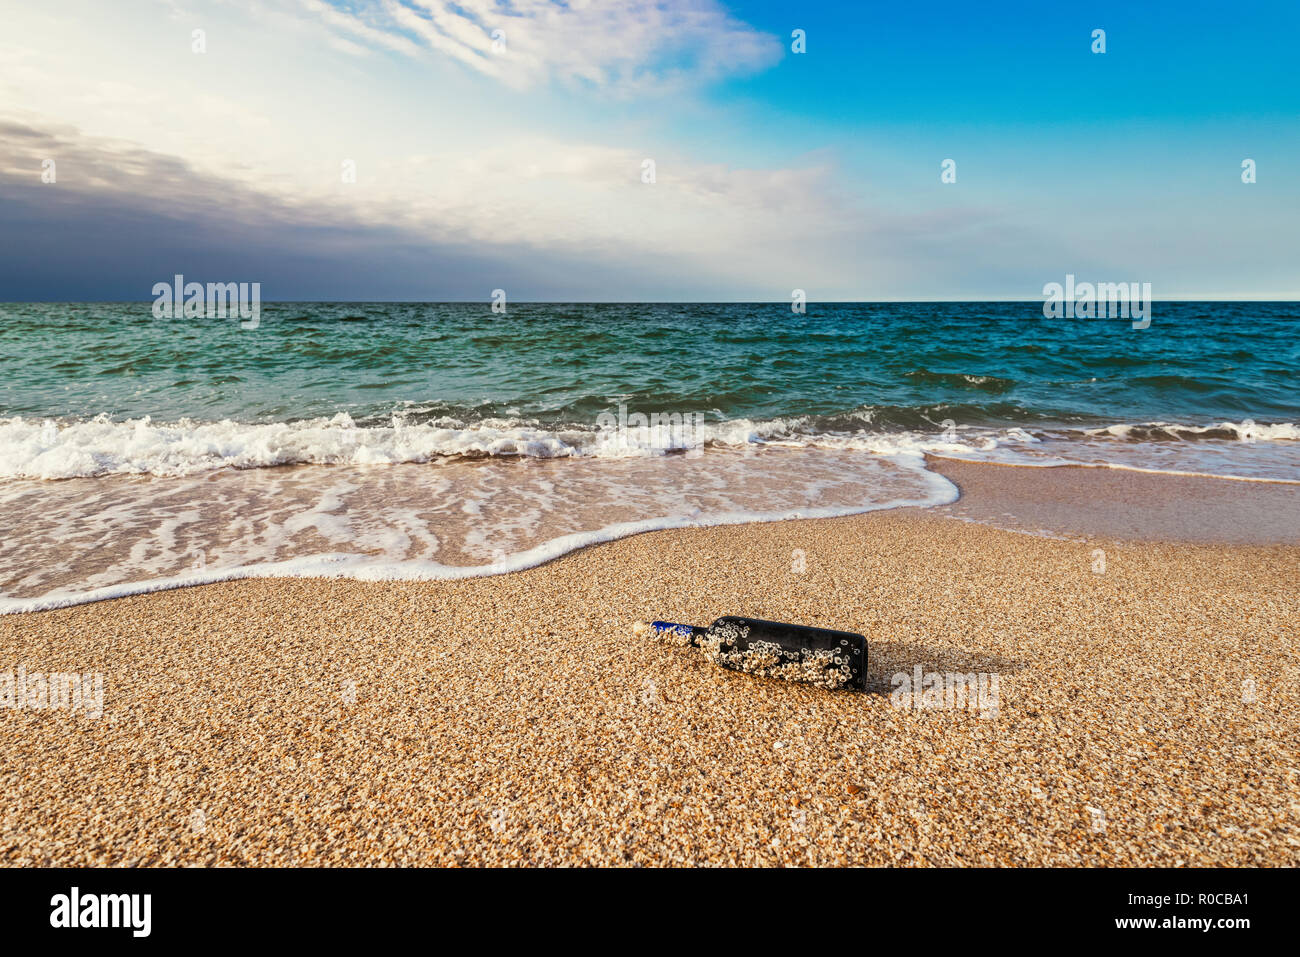 Eine Nachricht in einer Flasche mit korkgeschmack am leeren Strand Stockfoto